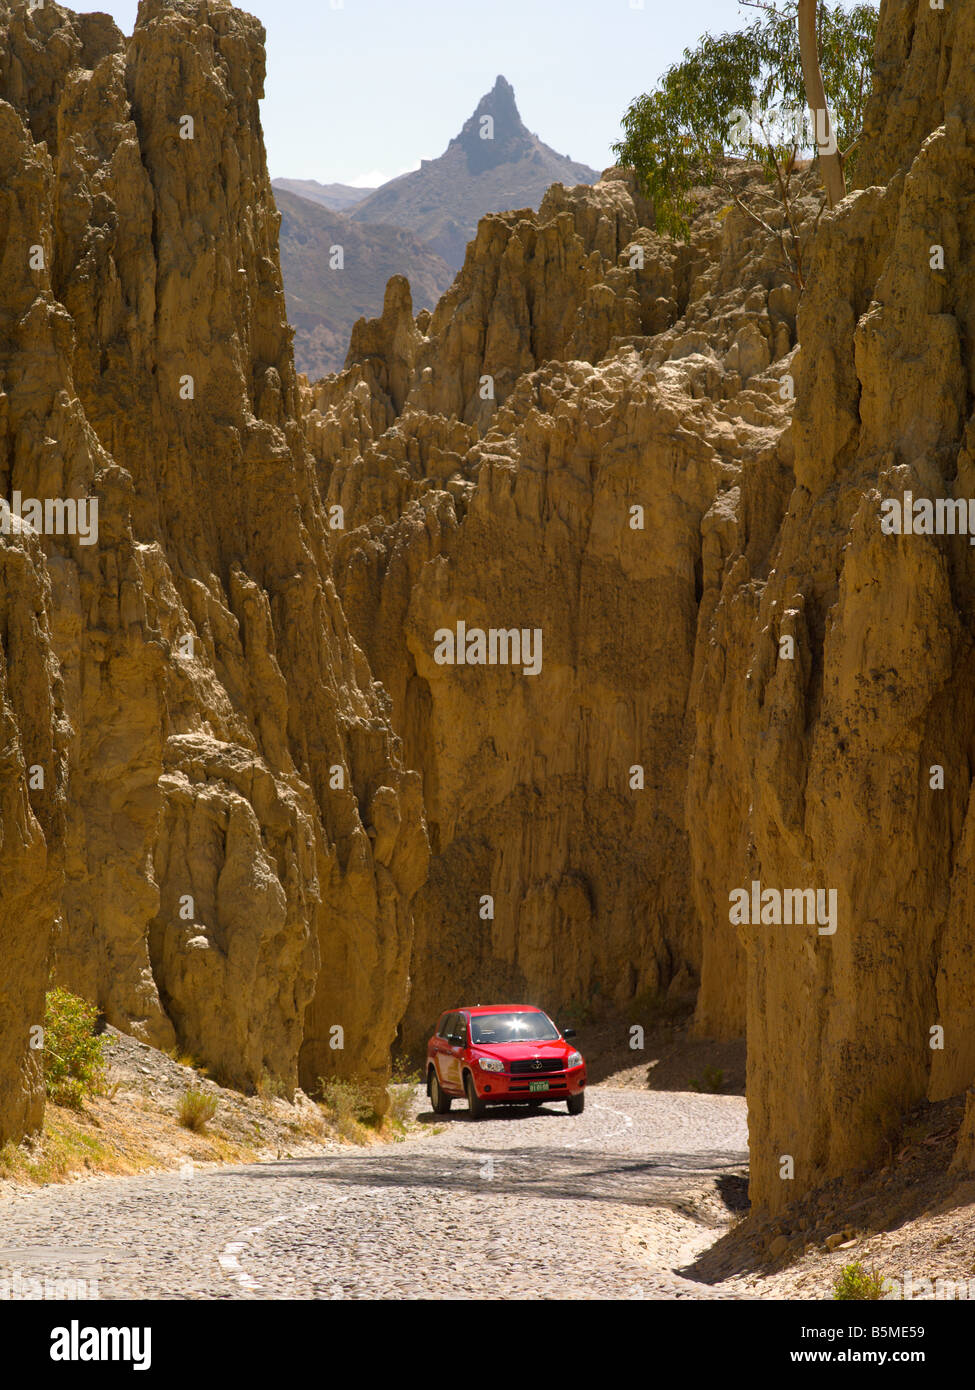 Rotes Auto gewundenen Straße gelb felsiger Berg Reise touristischen Höhepunkt Kurve vertikal 4 x 4 LKW Panorama Route Landschaft Landschaftsansicht Stockfoto